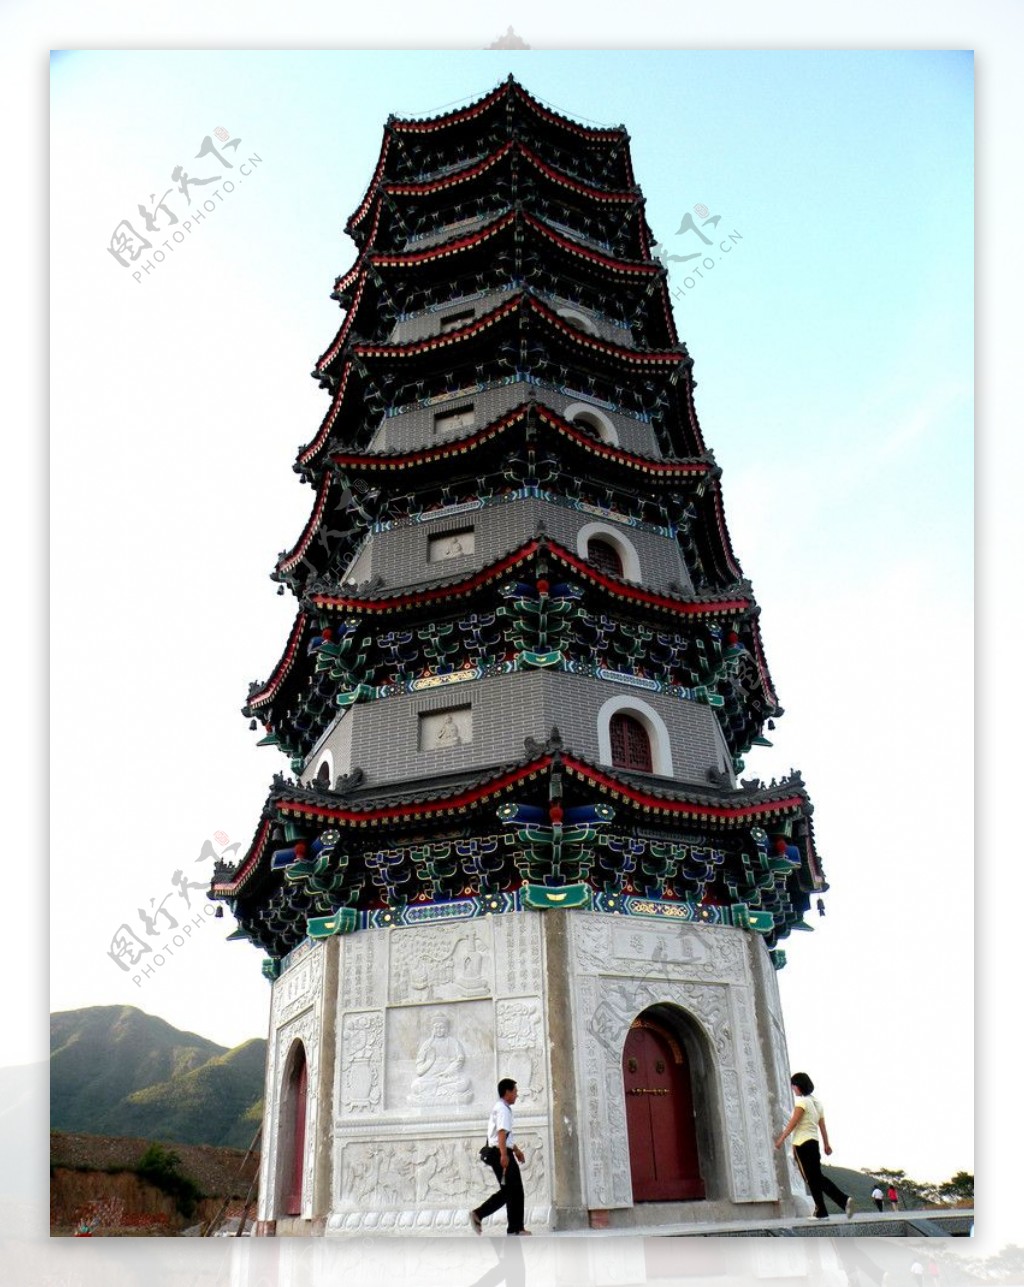 龙泉寺庙图片